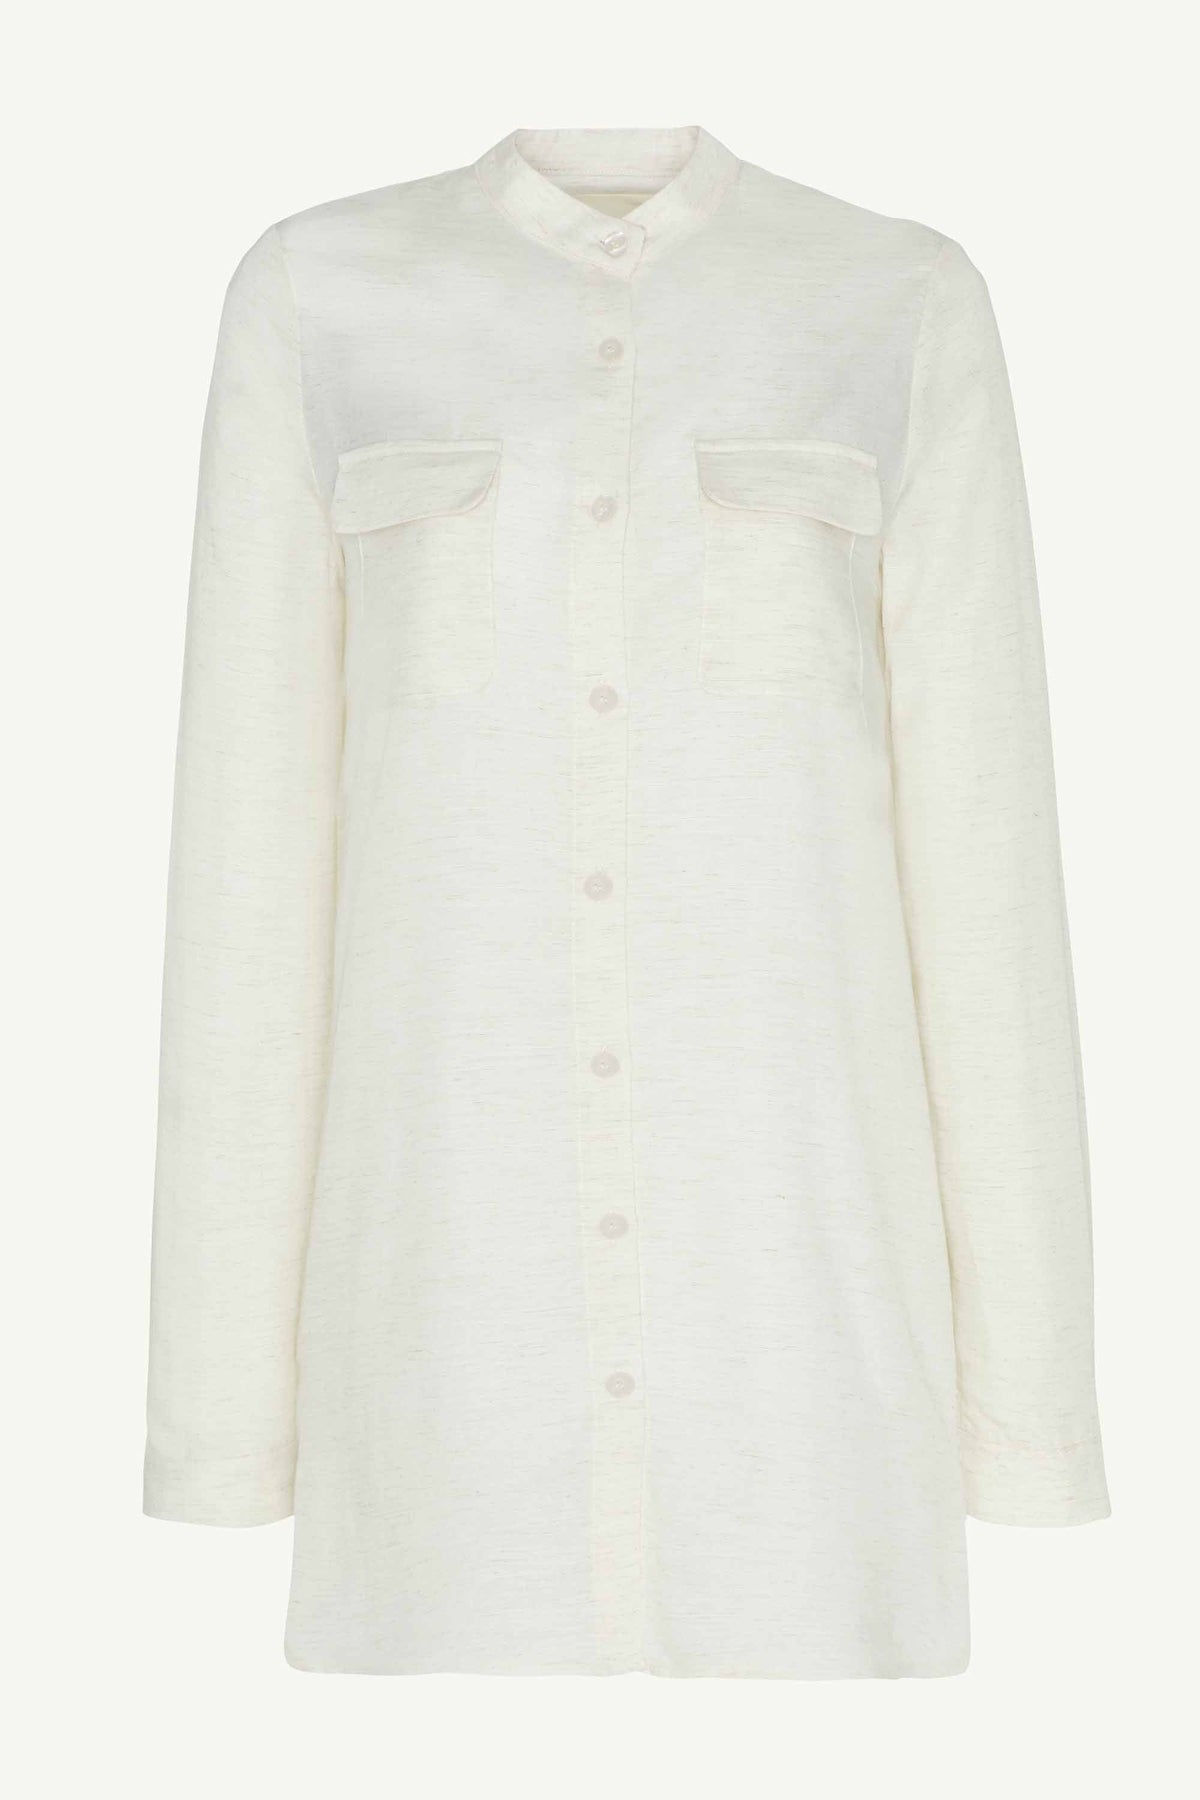 Lamia Cotton Linen Button Down Top - White Clothing saigonodysseyhotel 